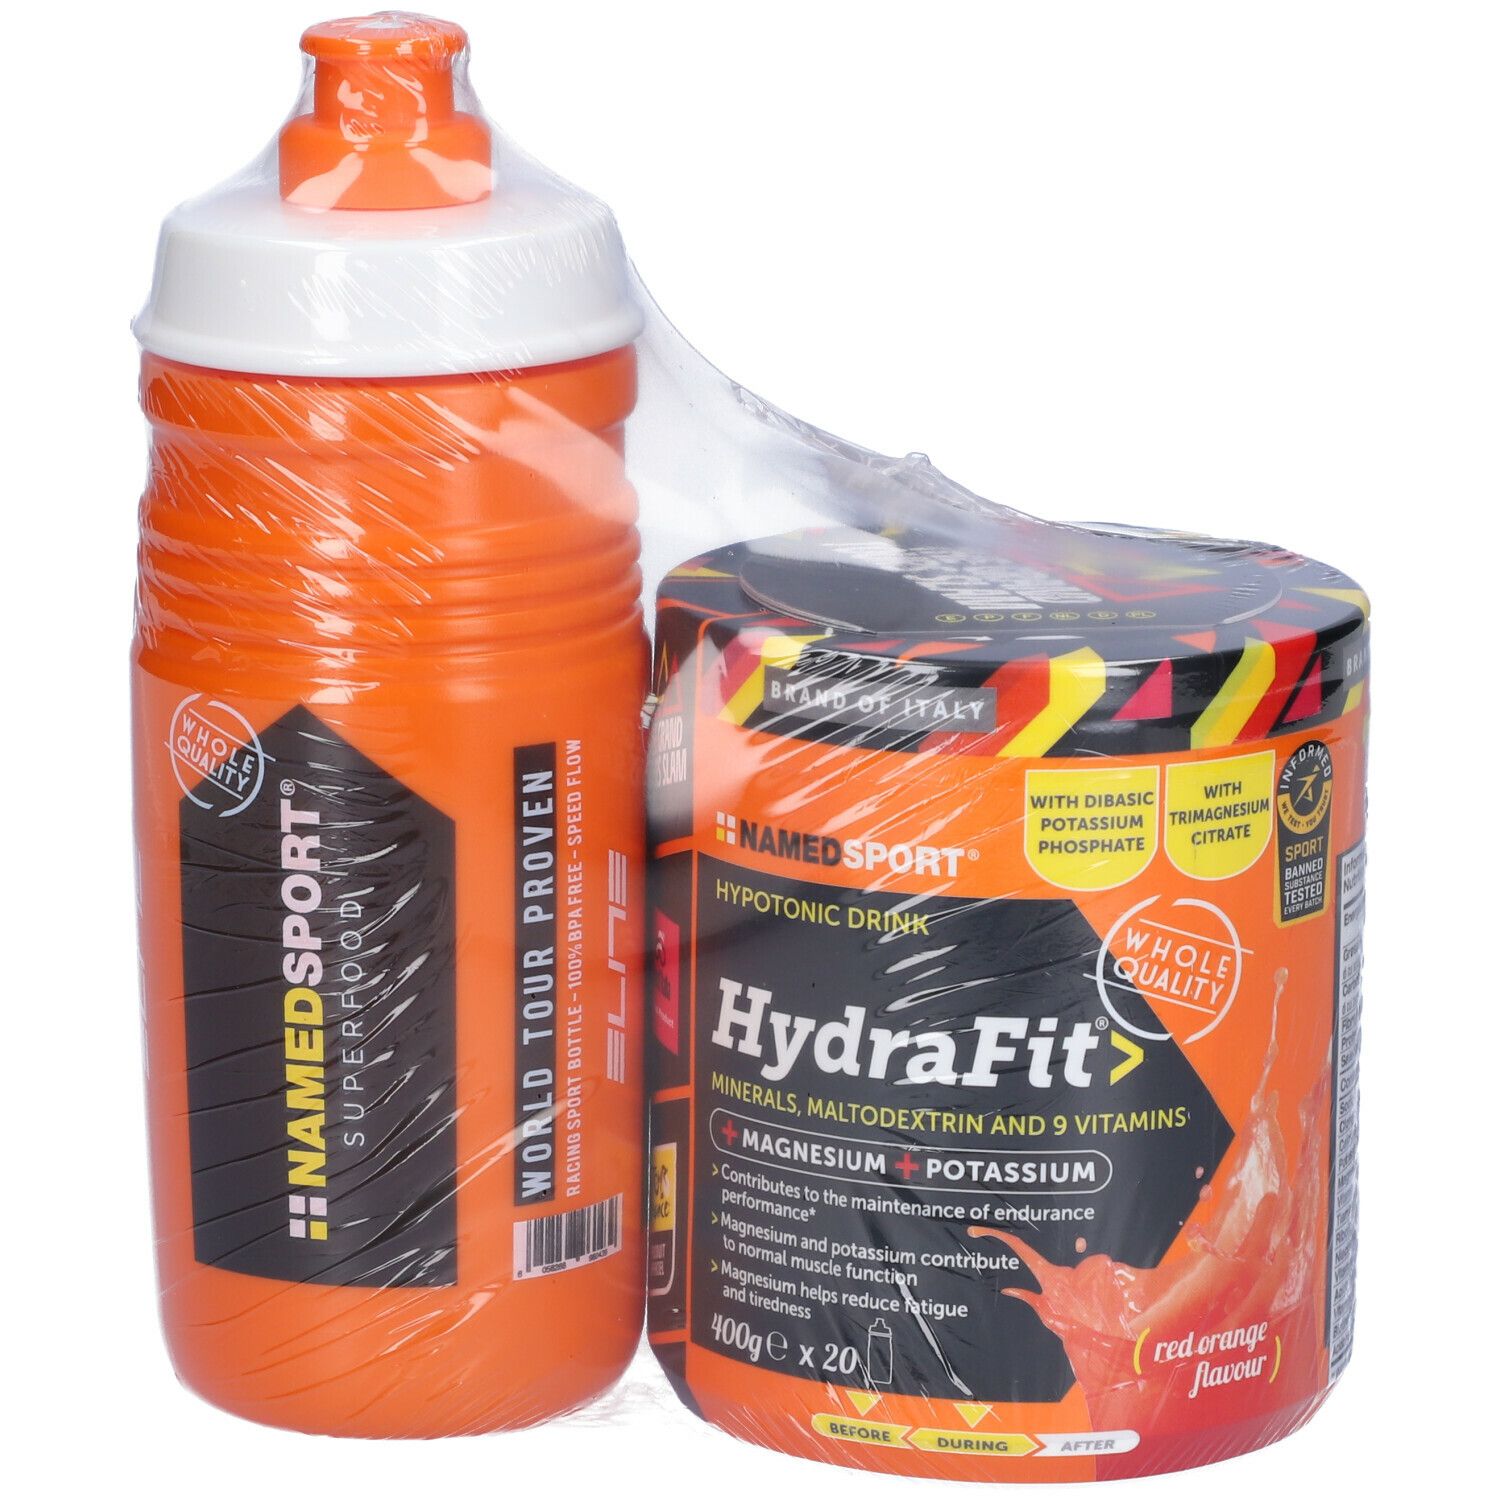 NAMED SPORT® HydraFit> 400 g